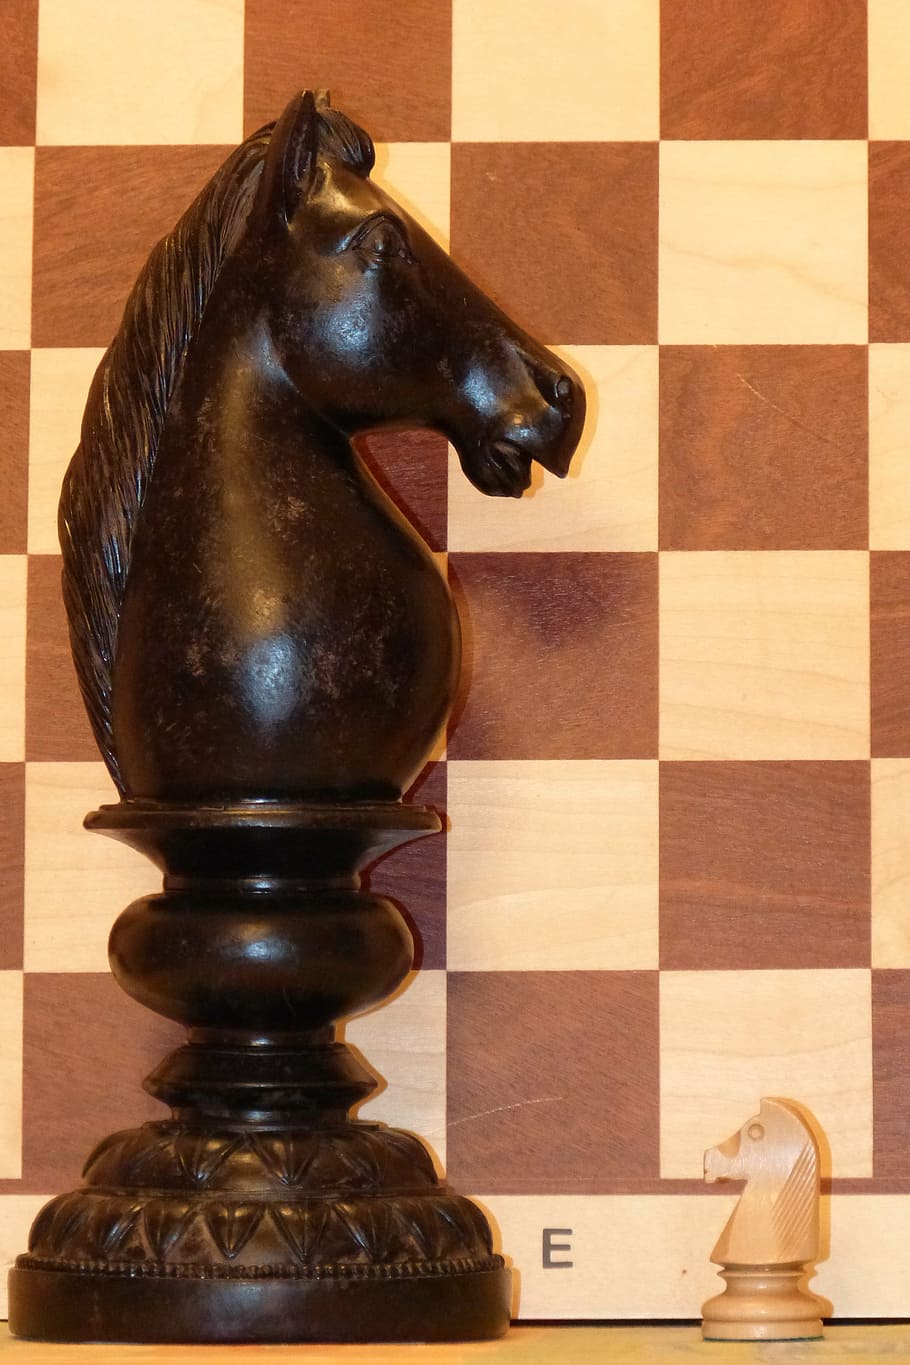 springer, chess, chess piece, horse, rössl, chess board, play, HD wallpaper